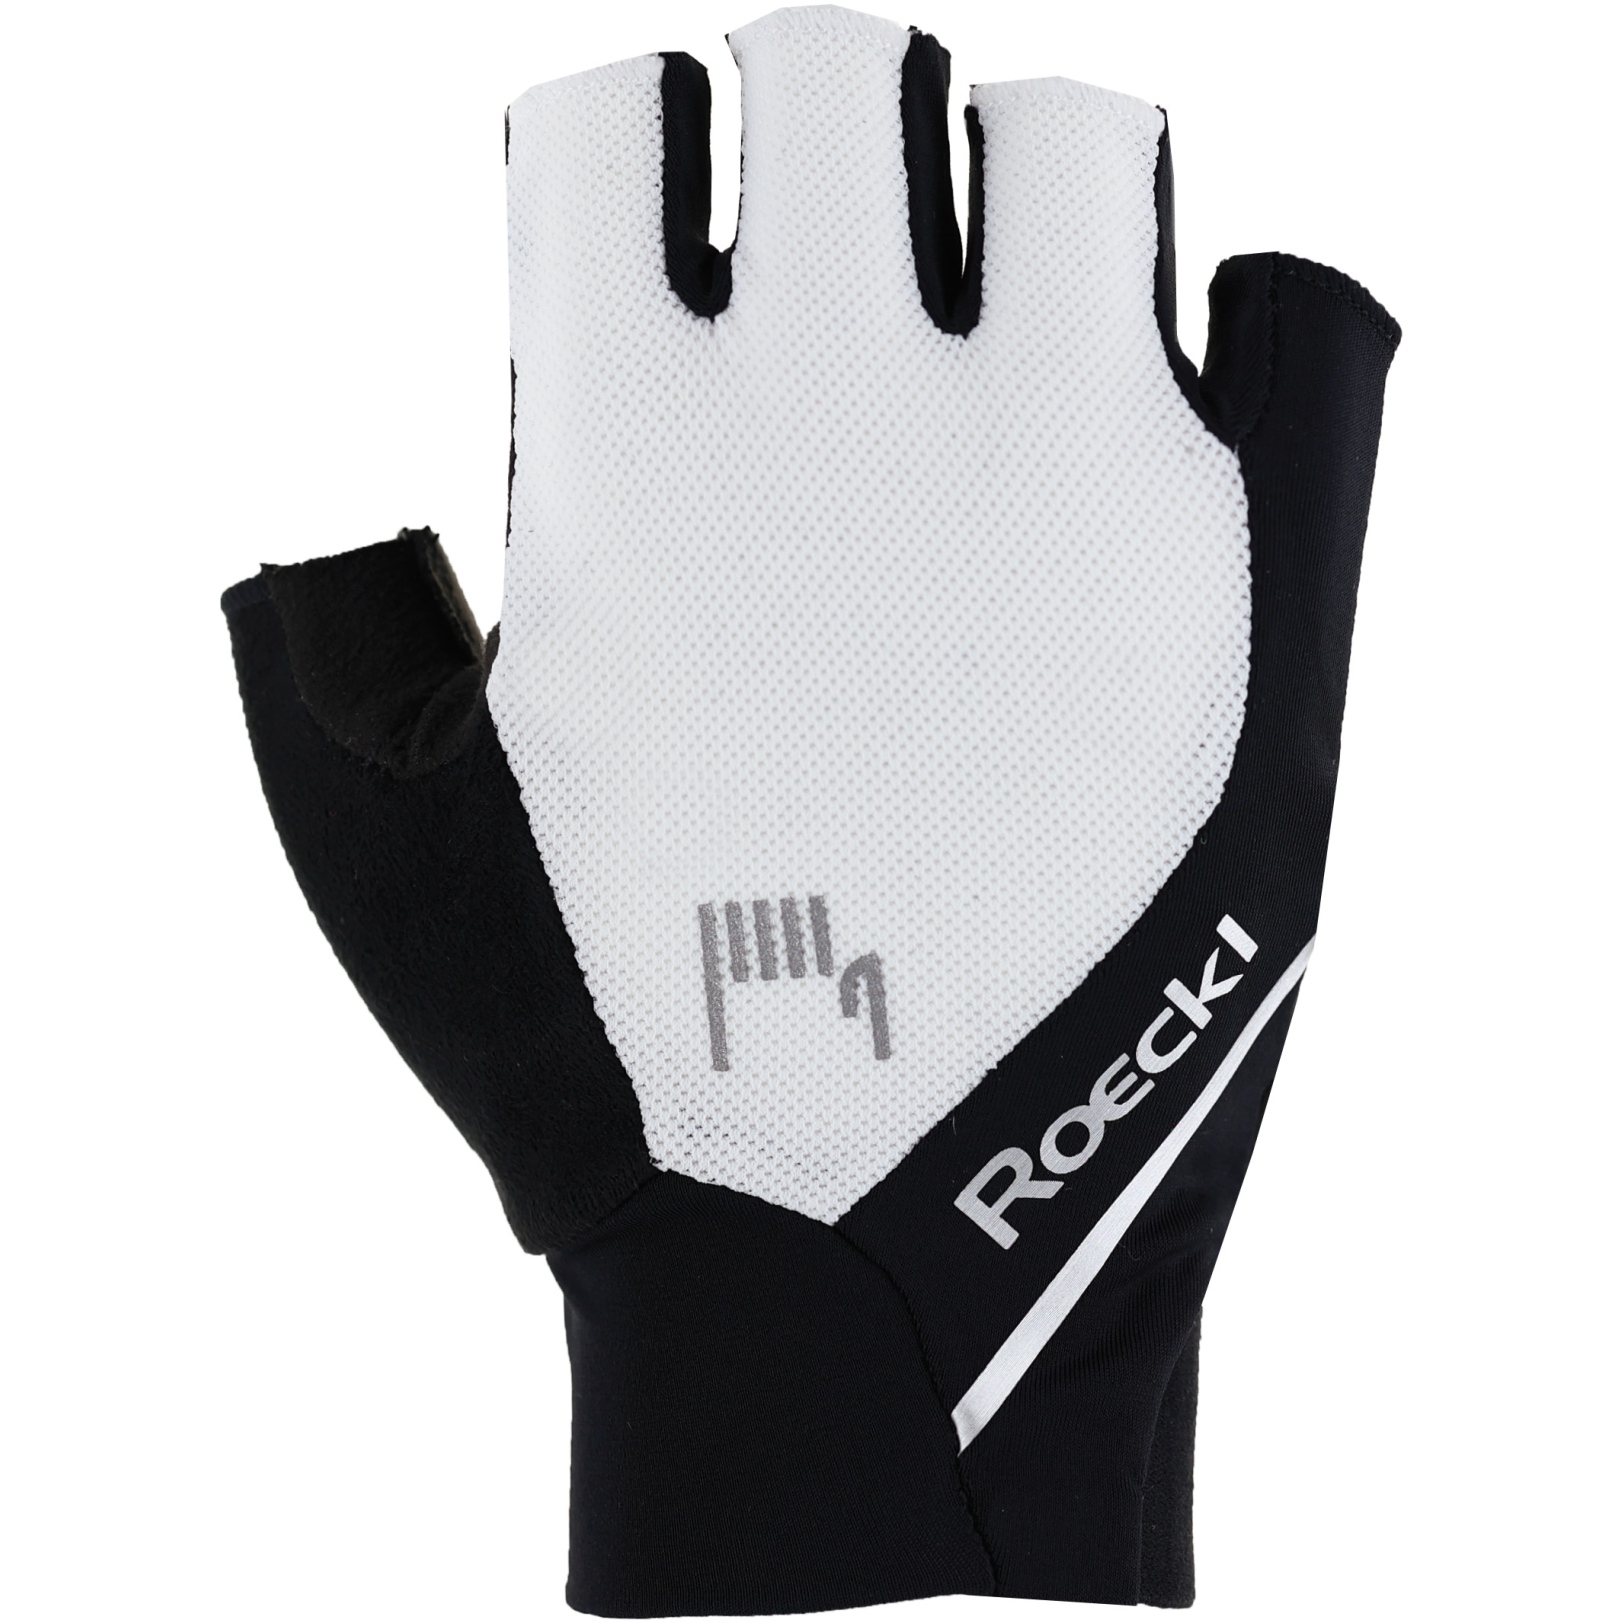 Productfoto van Roeckl Sports Ivory 2 Fietshandschoenen - wit/zwart 1009